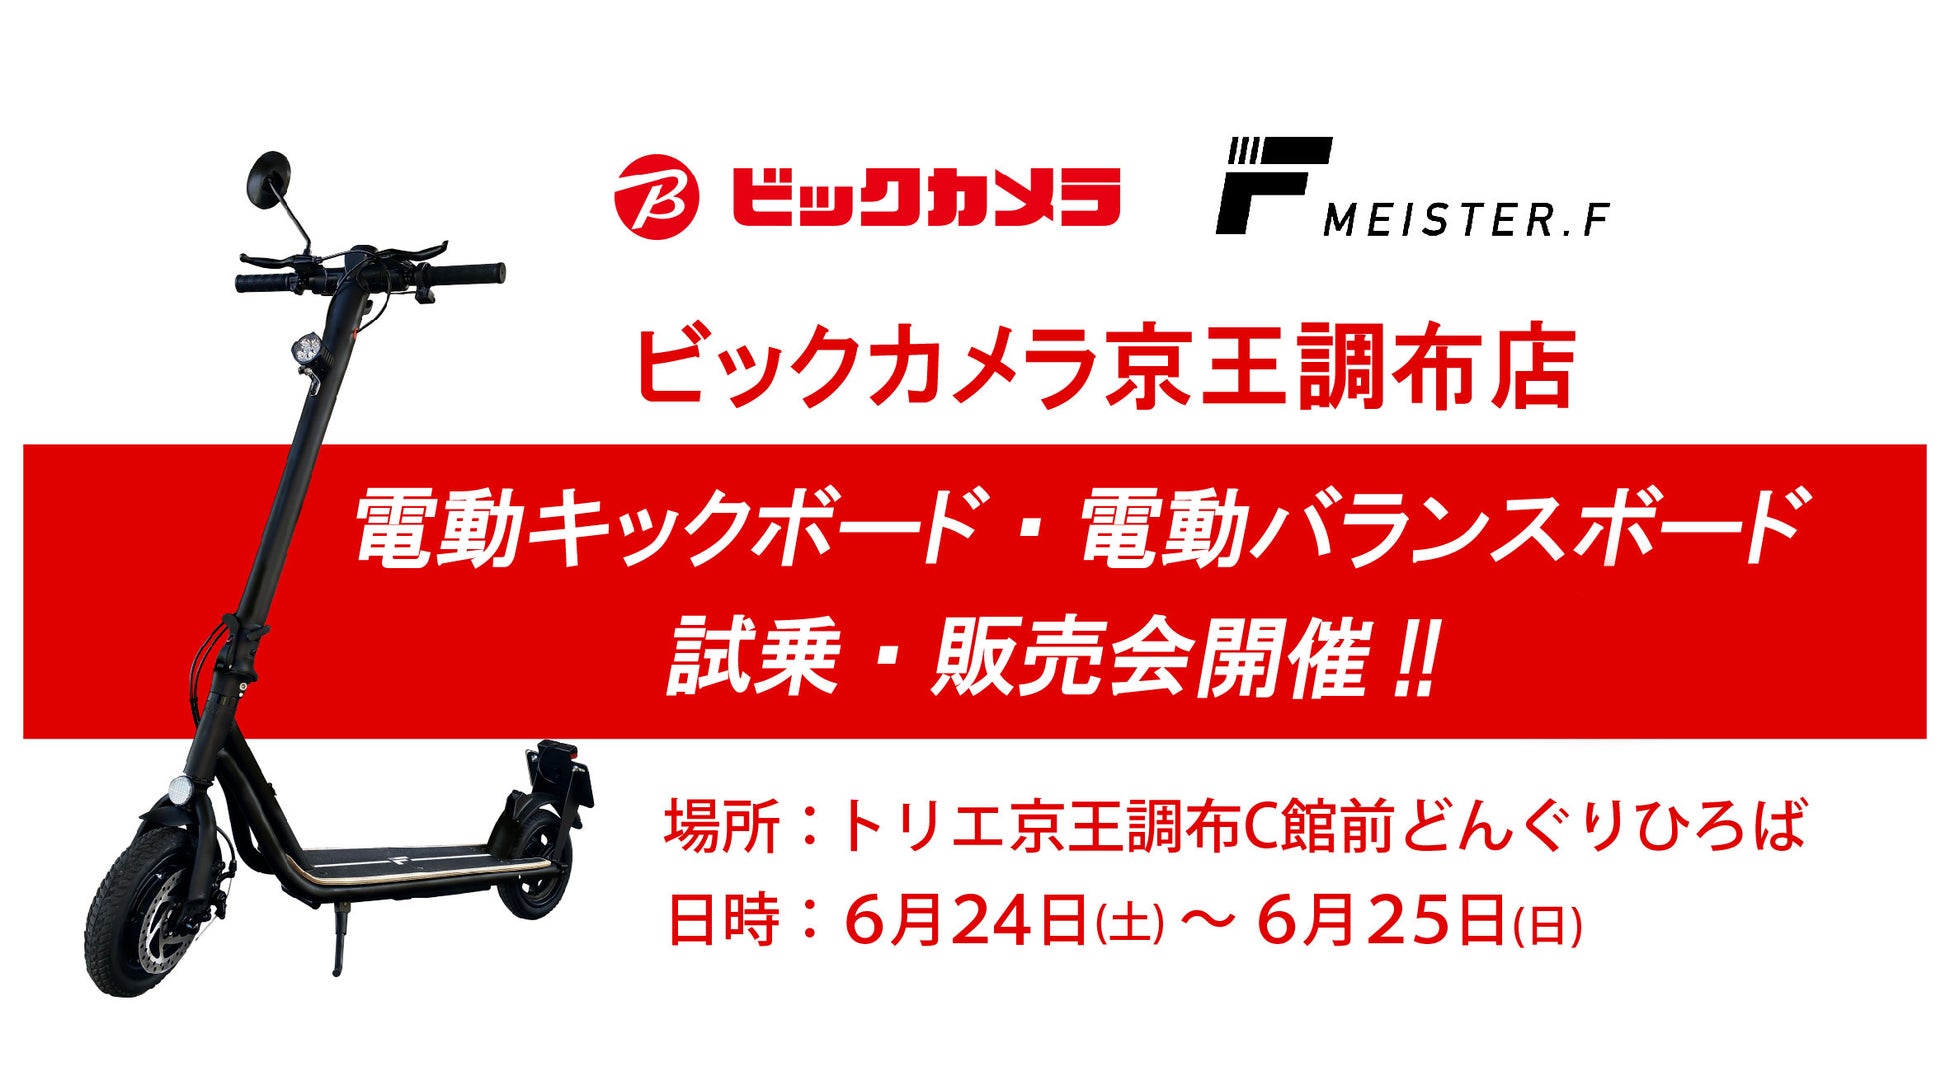 【MEISTER.F】電動モビリティのイベント、ビックカメラ京王調布店にて開催のサブ画像1